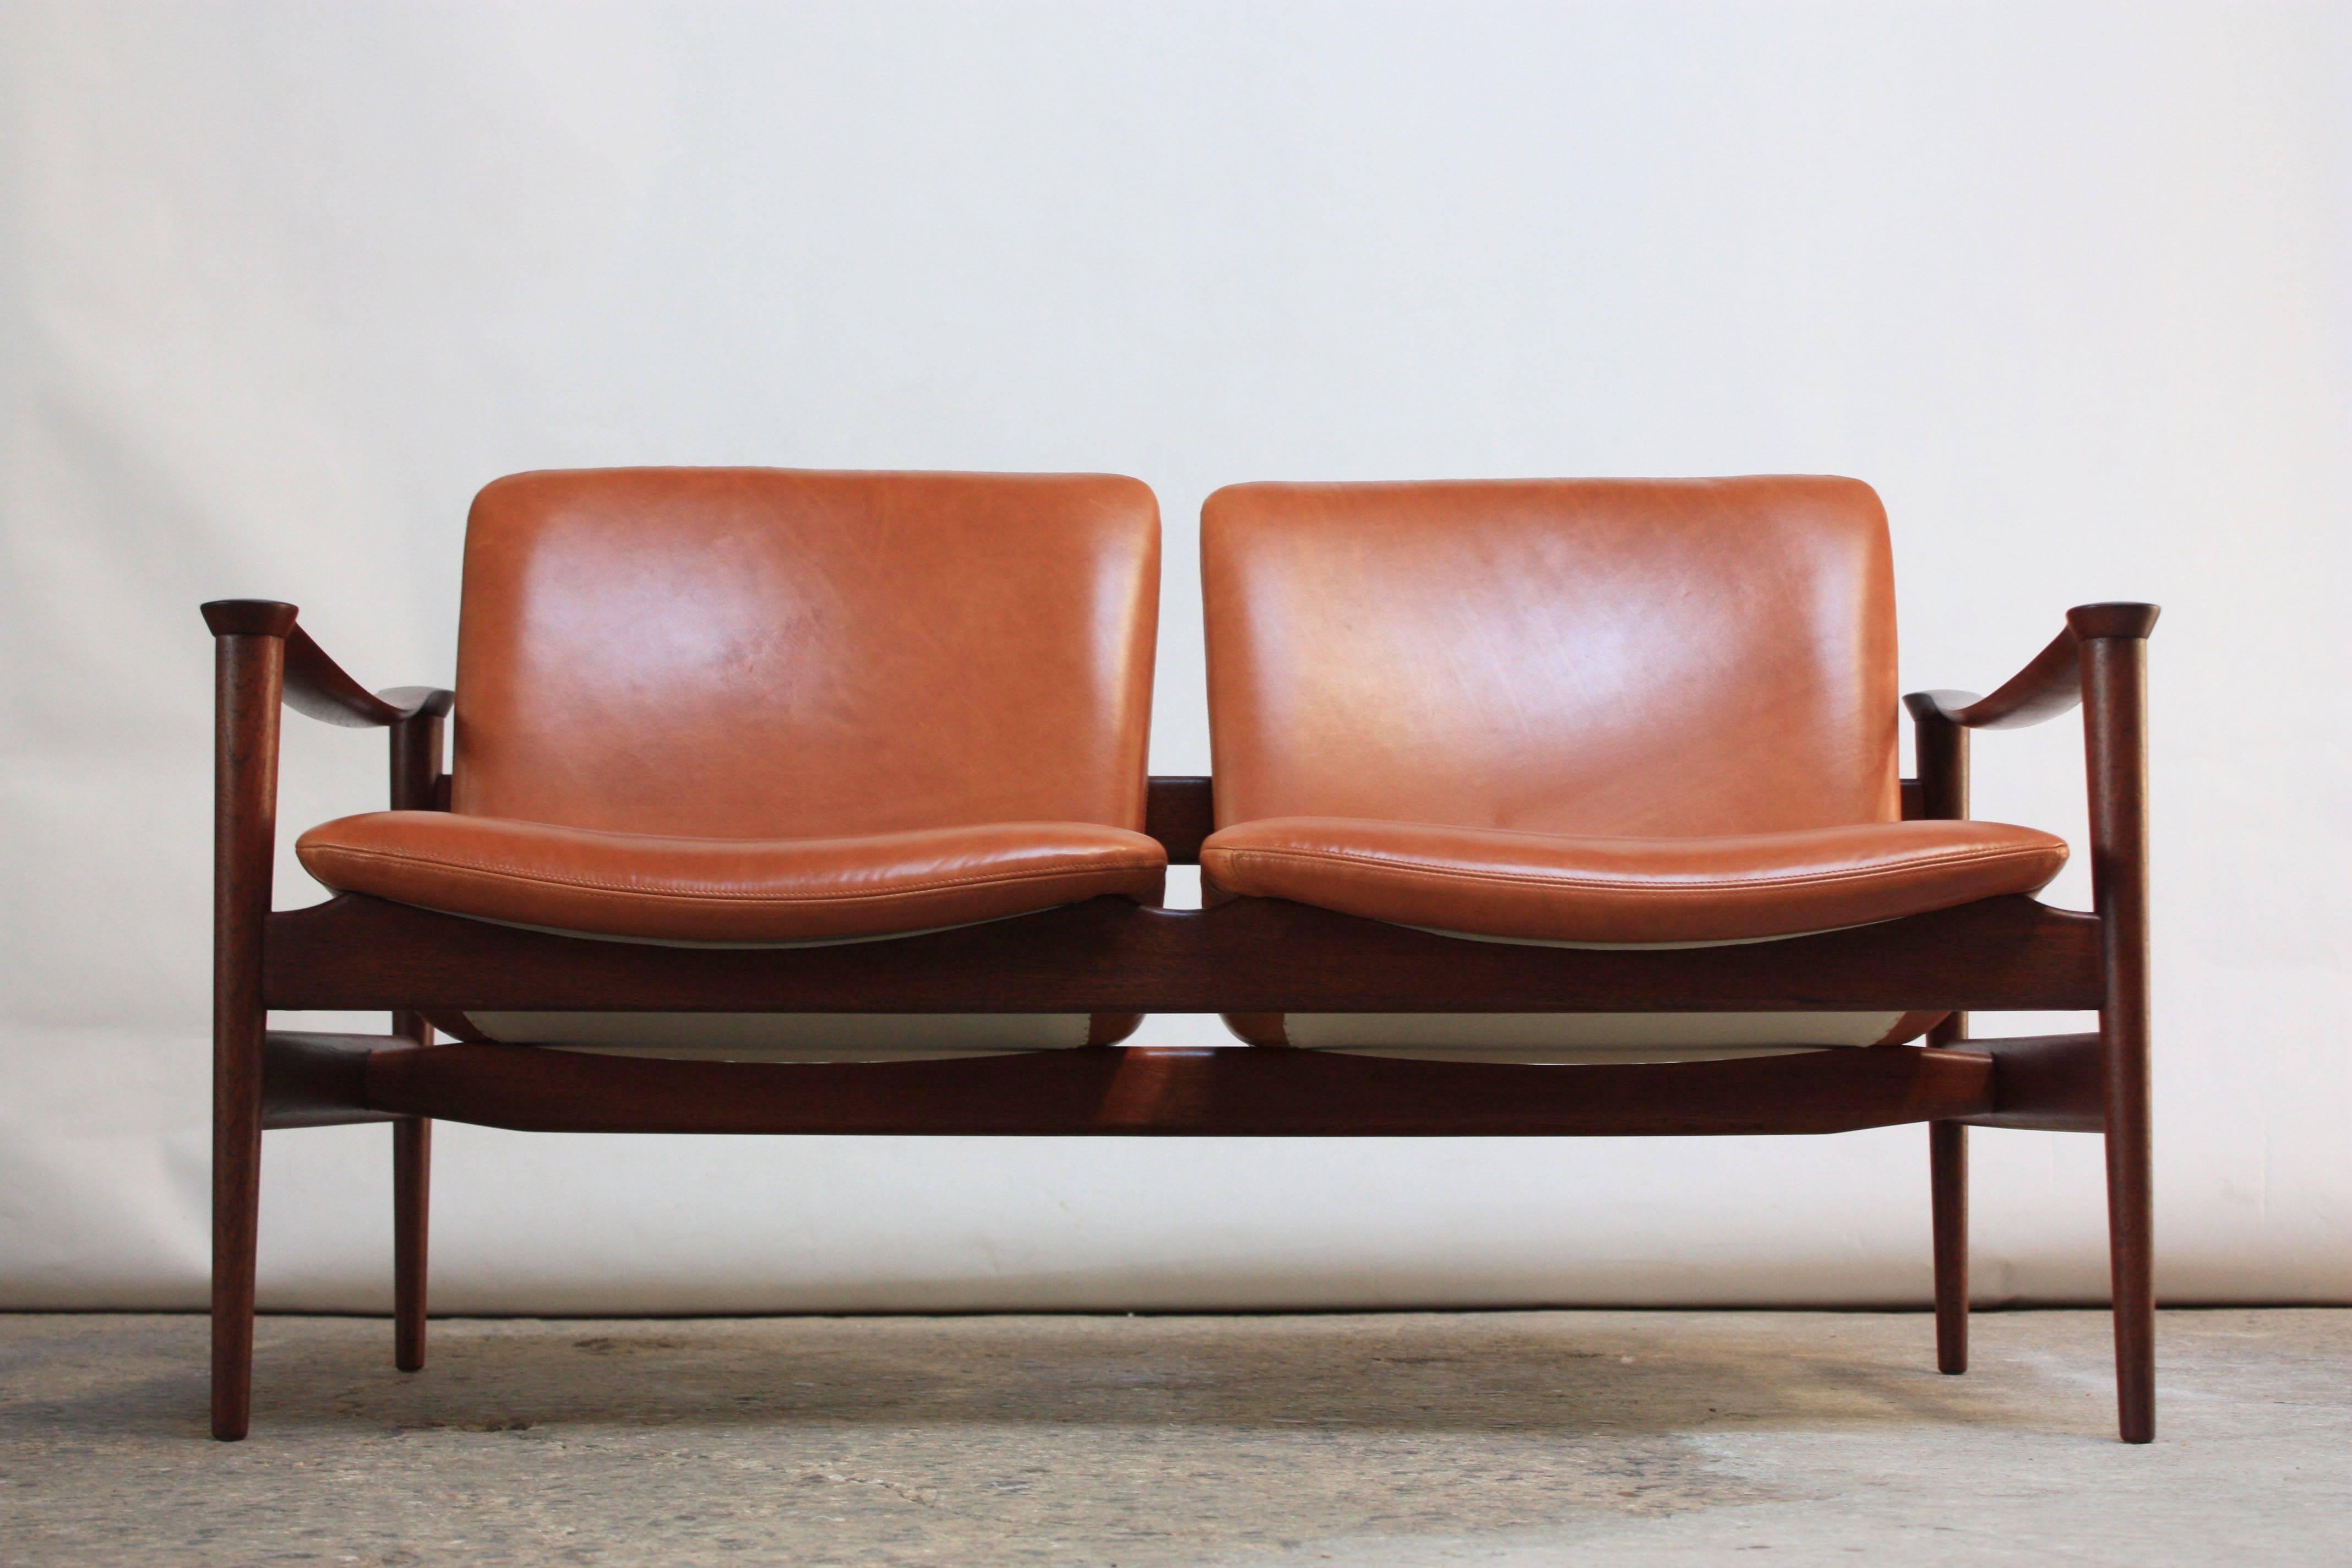 Dieses zweisitzige Sofa wurde von Fredrik Kayser für die Vatne Lenestolfabrikk (ca. 1960er Jahre, Norwegen) entworfen. 
Prächtiges Gestell aus geschnitztem Teakholz mit Armlehnen, die an zwei zusammenhängende Sackgassen erinnern. 
Massive Pfosten